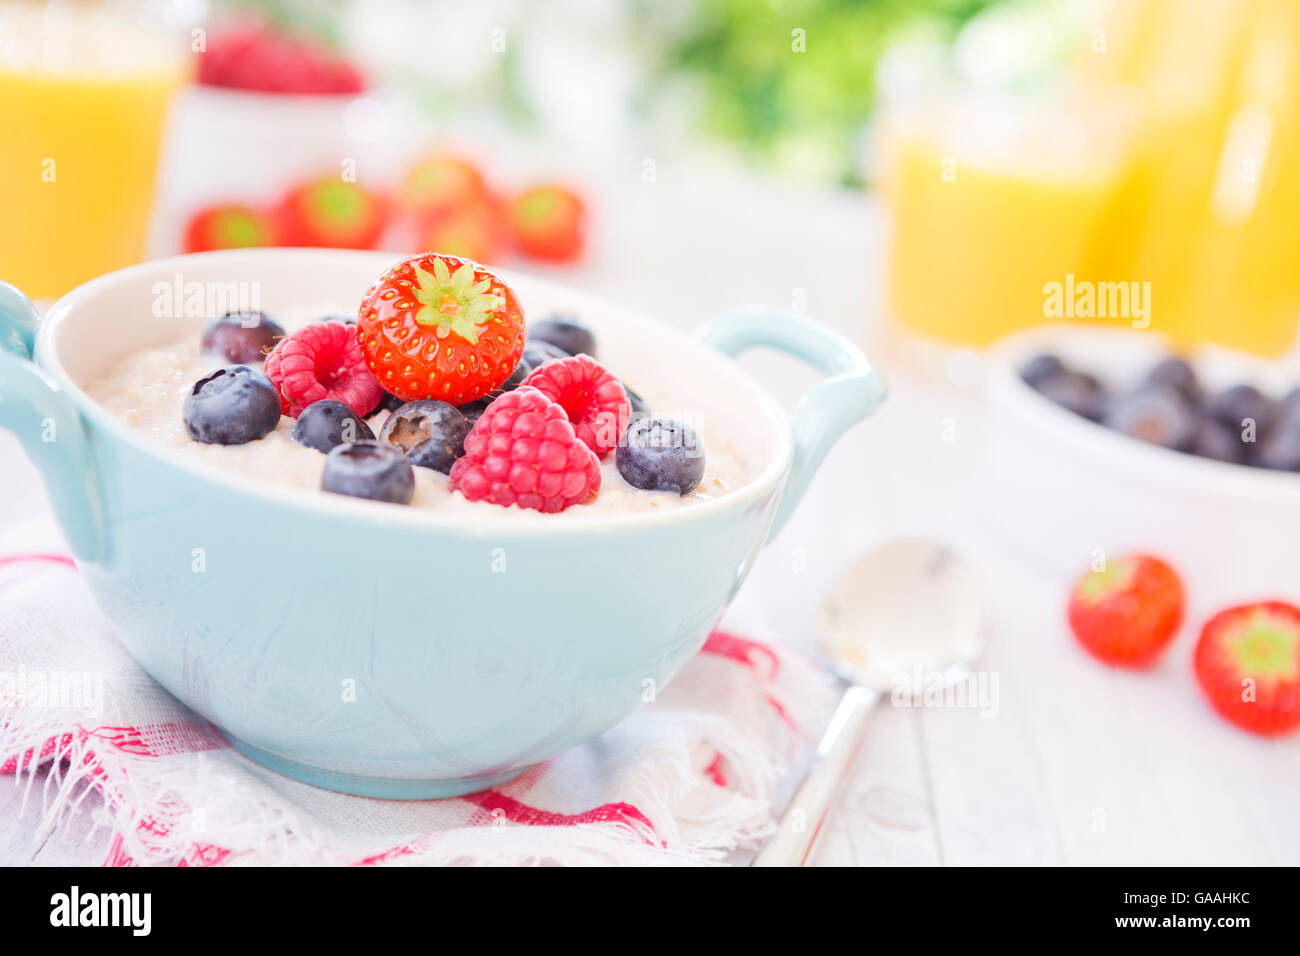 Un bol de porridge d'avoine fait maison avec des fruits frais sur une table en plein air rustique. Banque D'Images